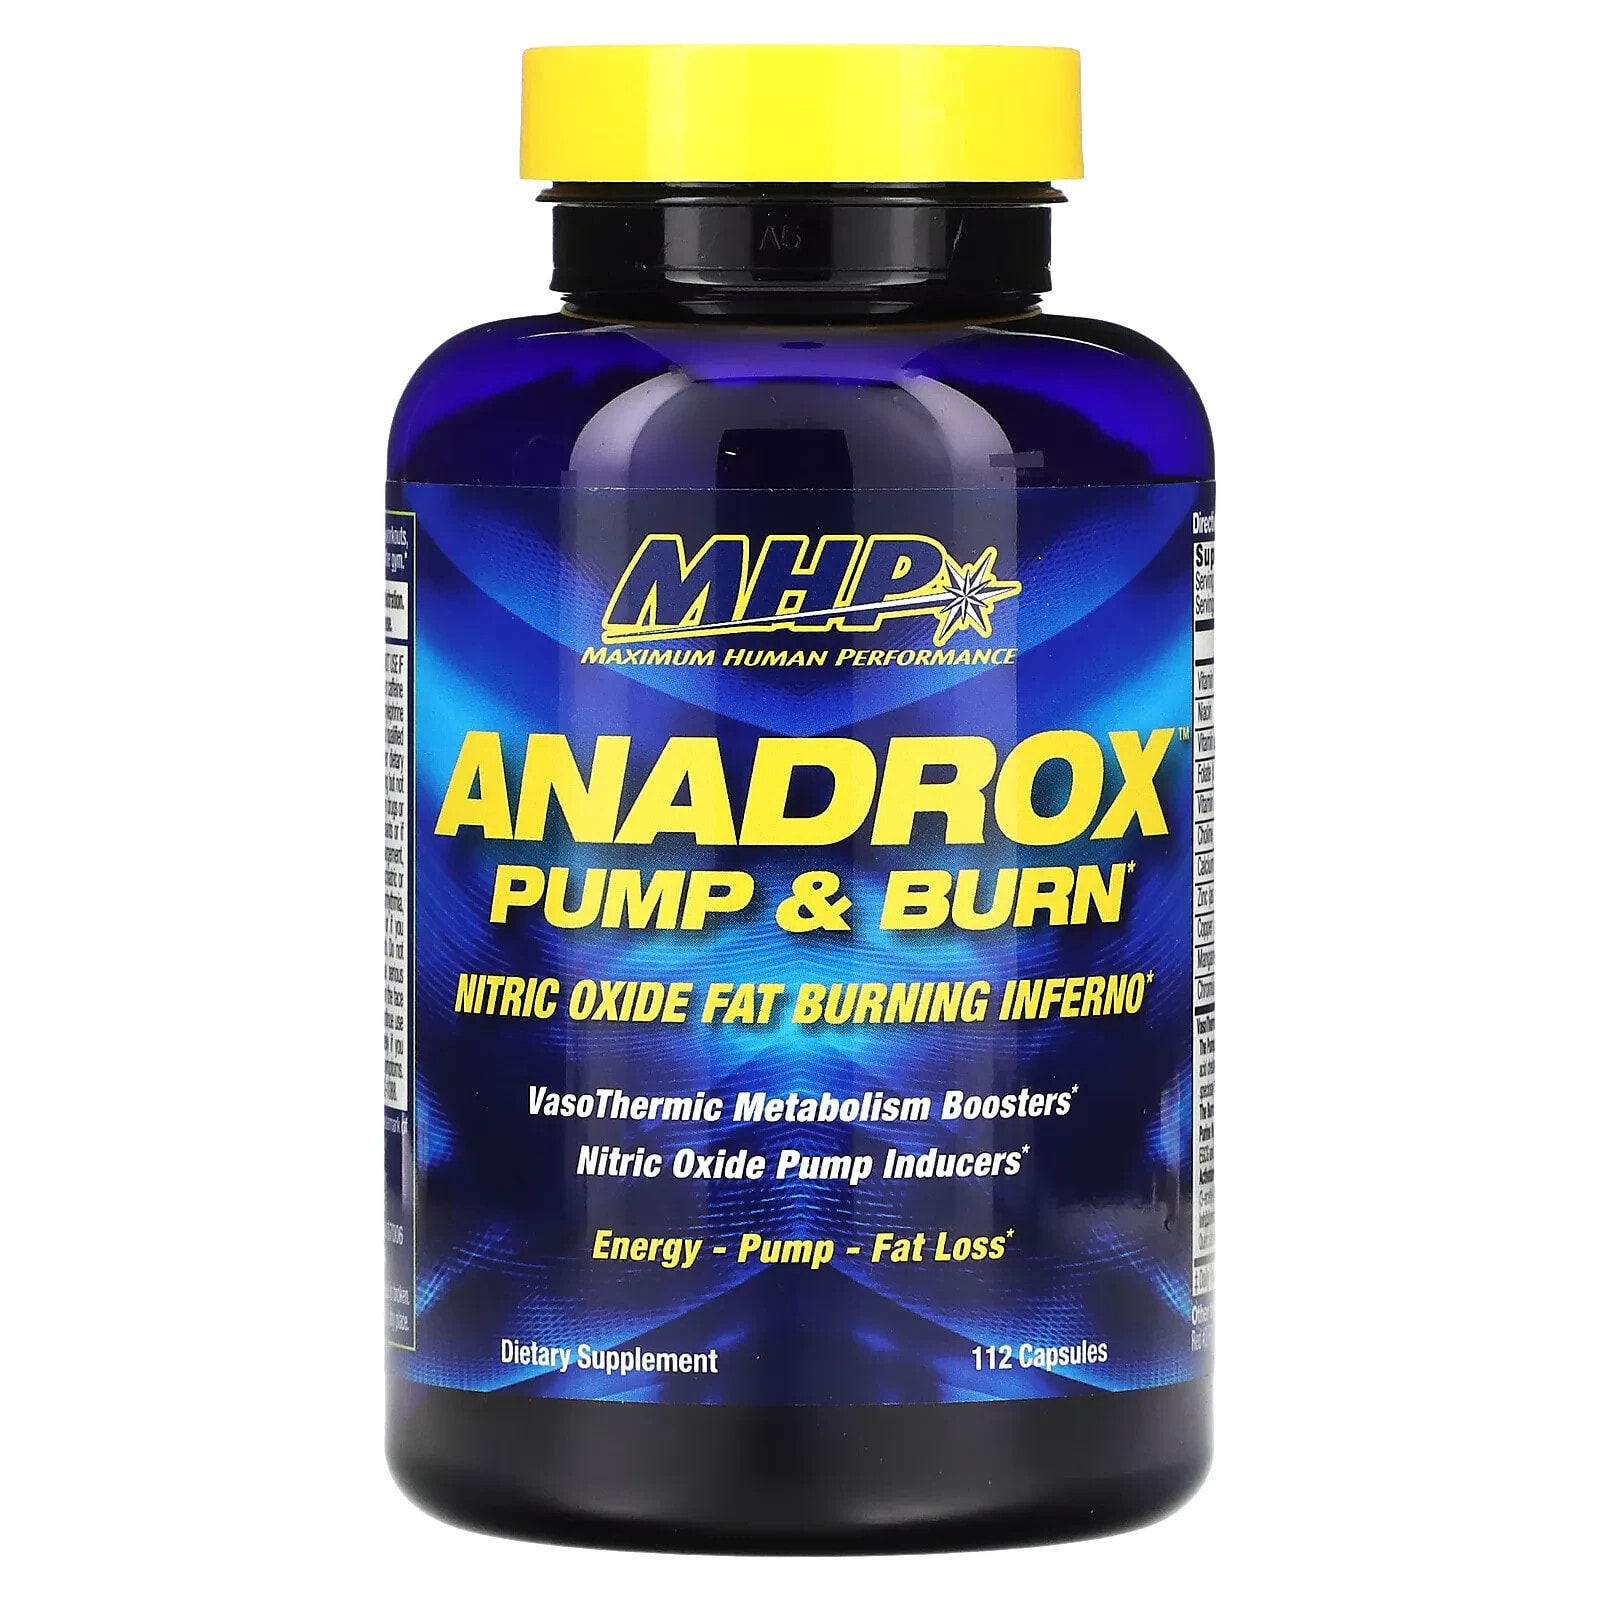 Anadrox Pump & Burn, 224 Capsules